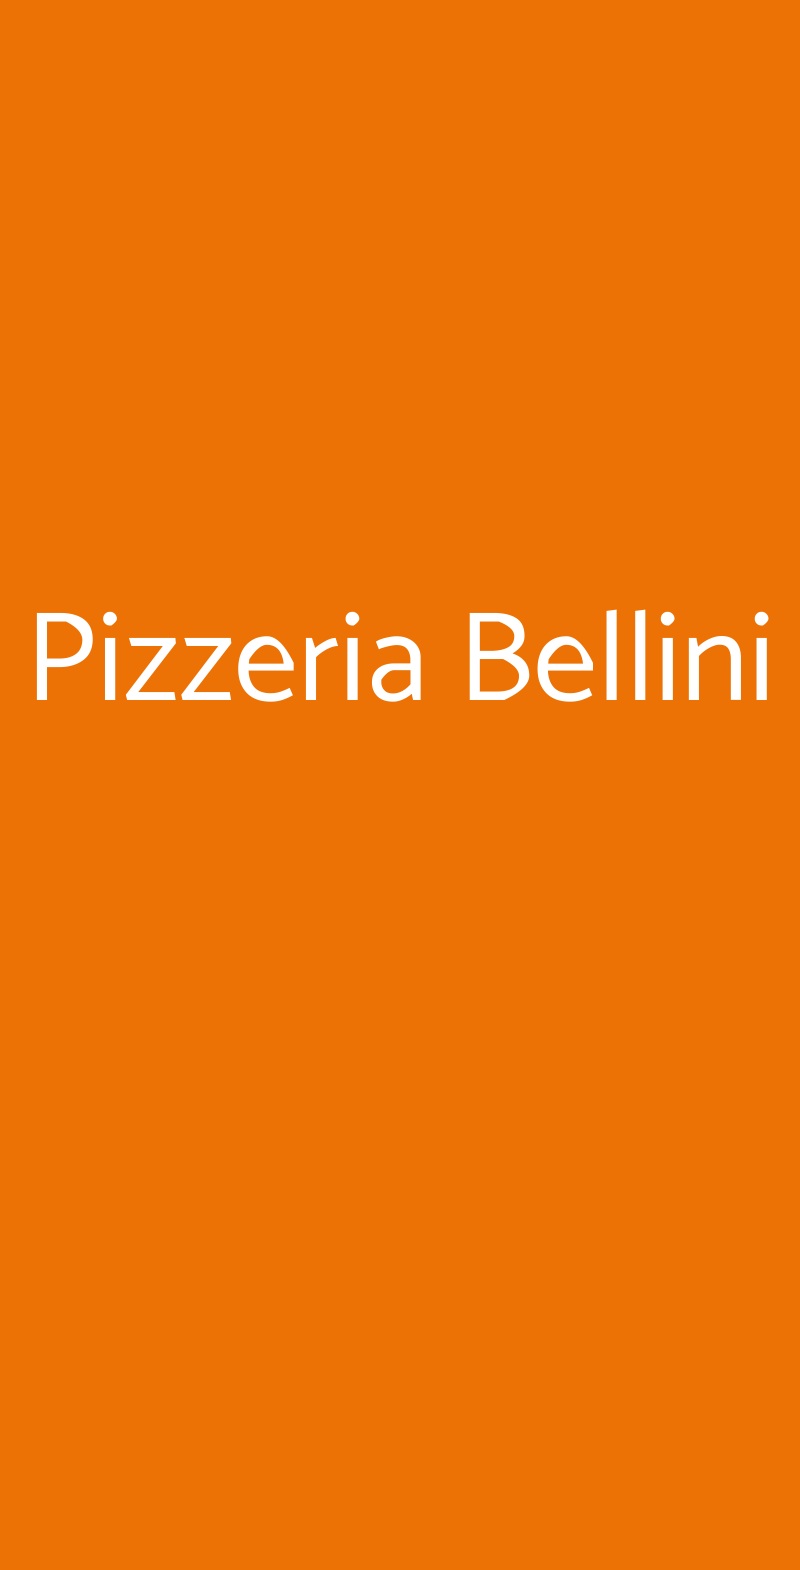 Pizzeria Bellini Napoli menù 1 pagina